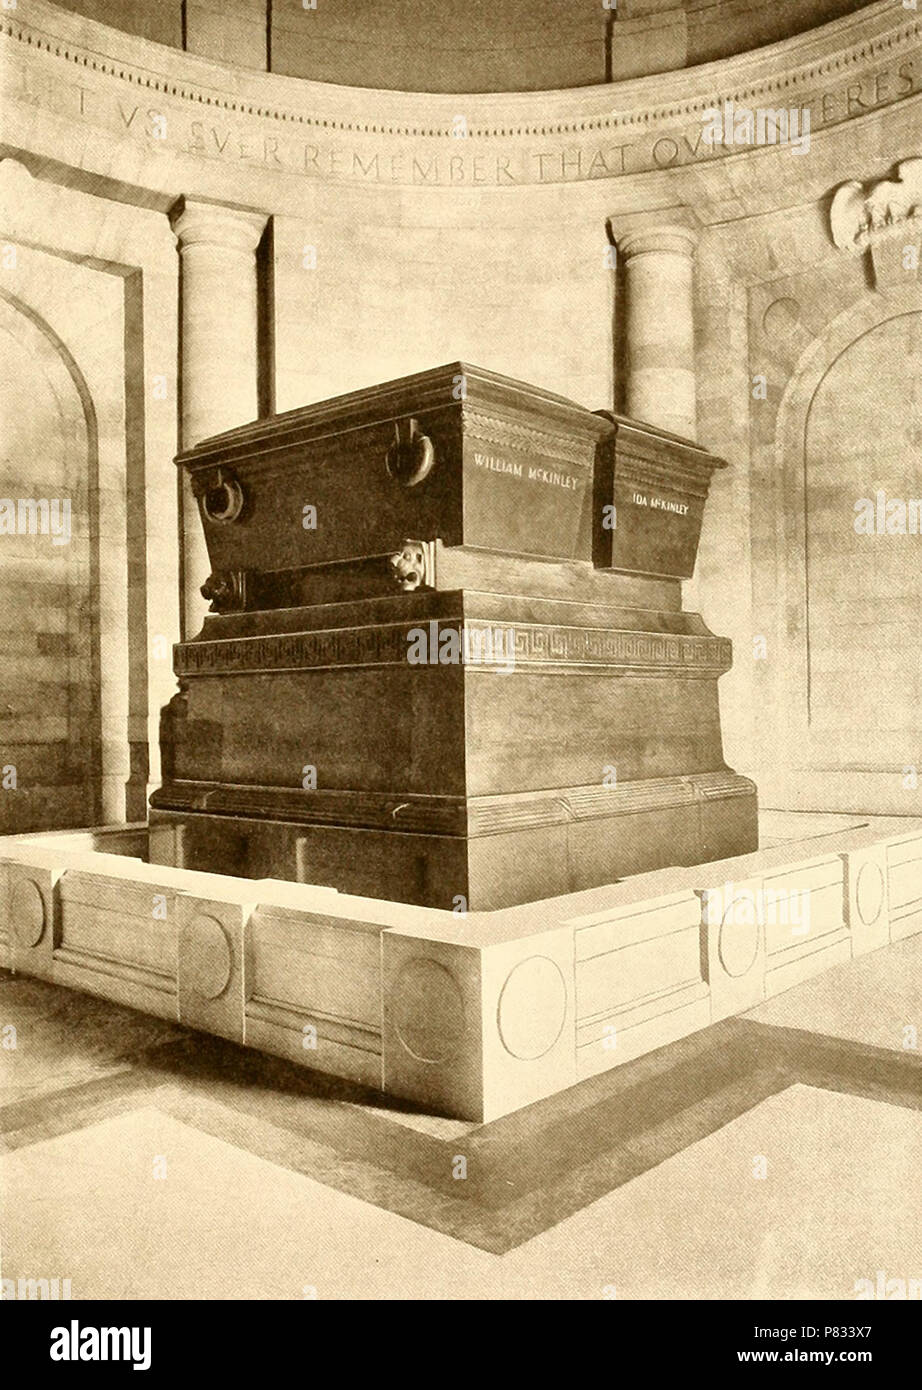 Innenraum des Mausoleums - die Sarkophage. Präsident William McKinley Denkmal an die Zeit der Widmung, Oktober 1907. Canton, Ohio Stockfoto